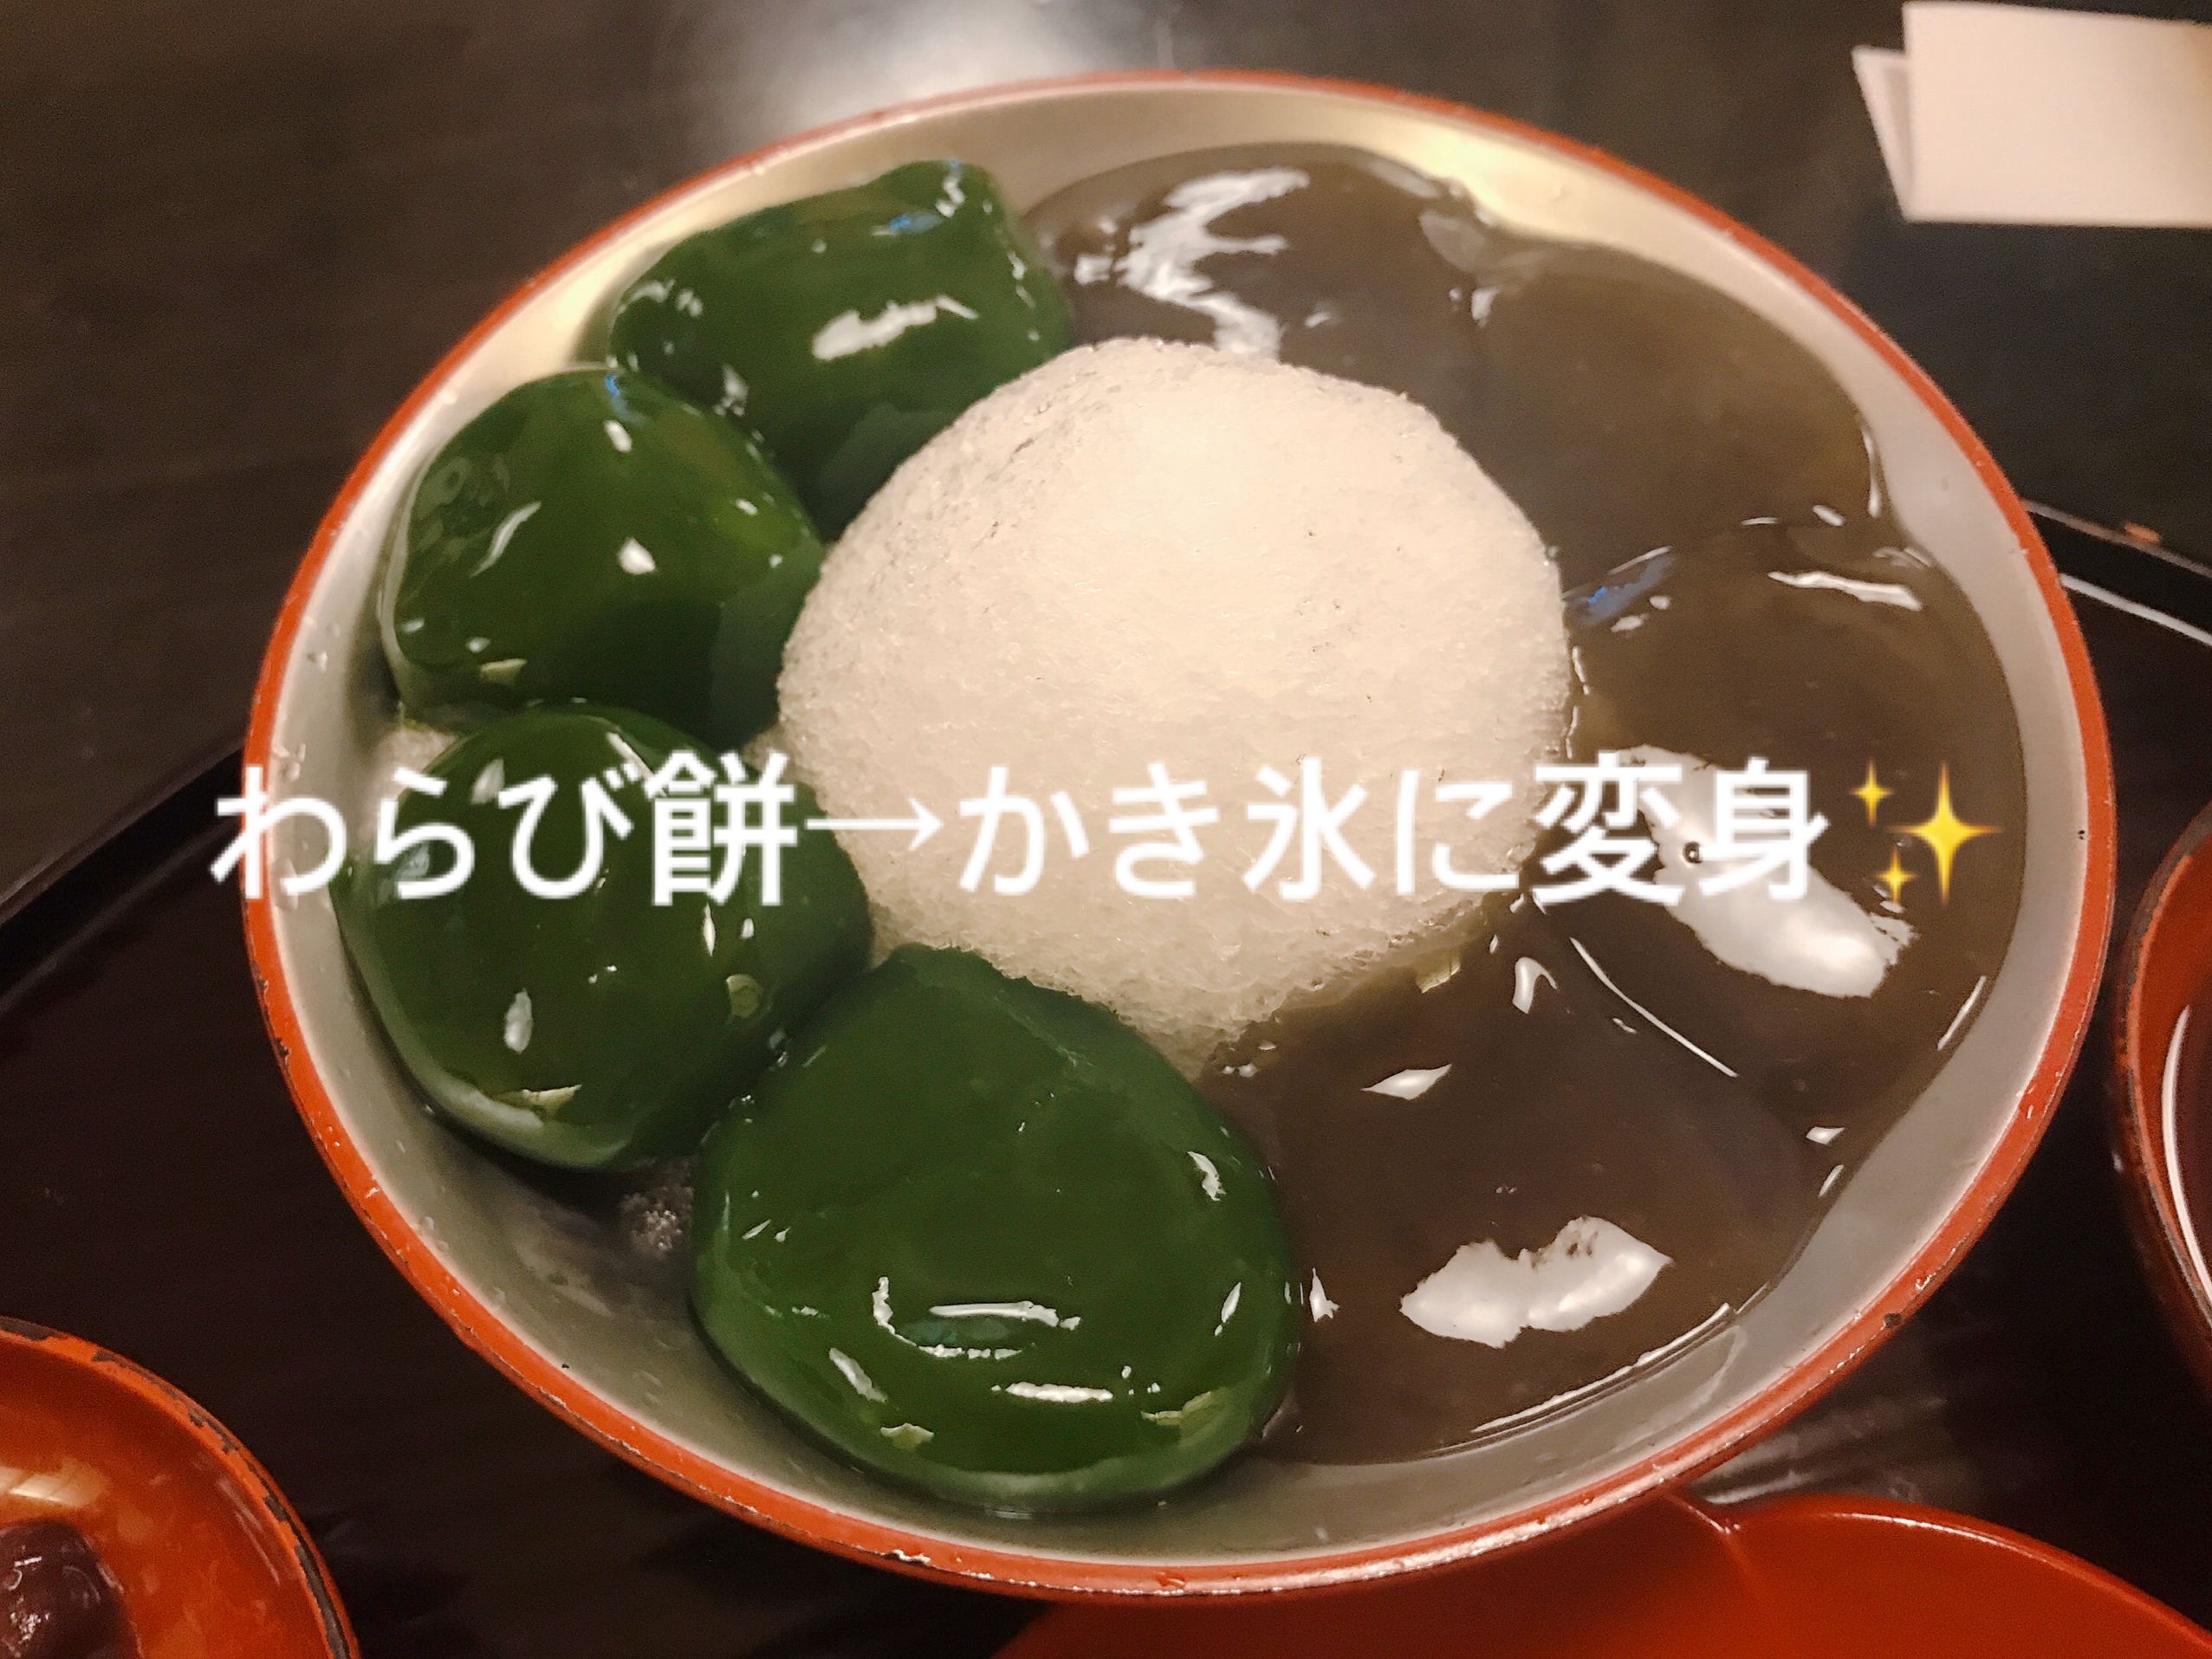 抹茶 ぎおん徳屋のわらび餅はかき氷で二度おいしい 京都 抹茶スイーツの魅力を発信するブログ Matcha